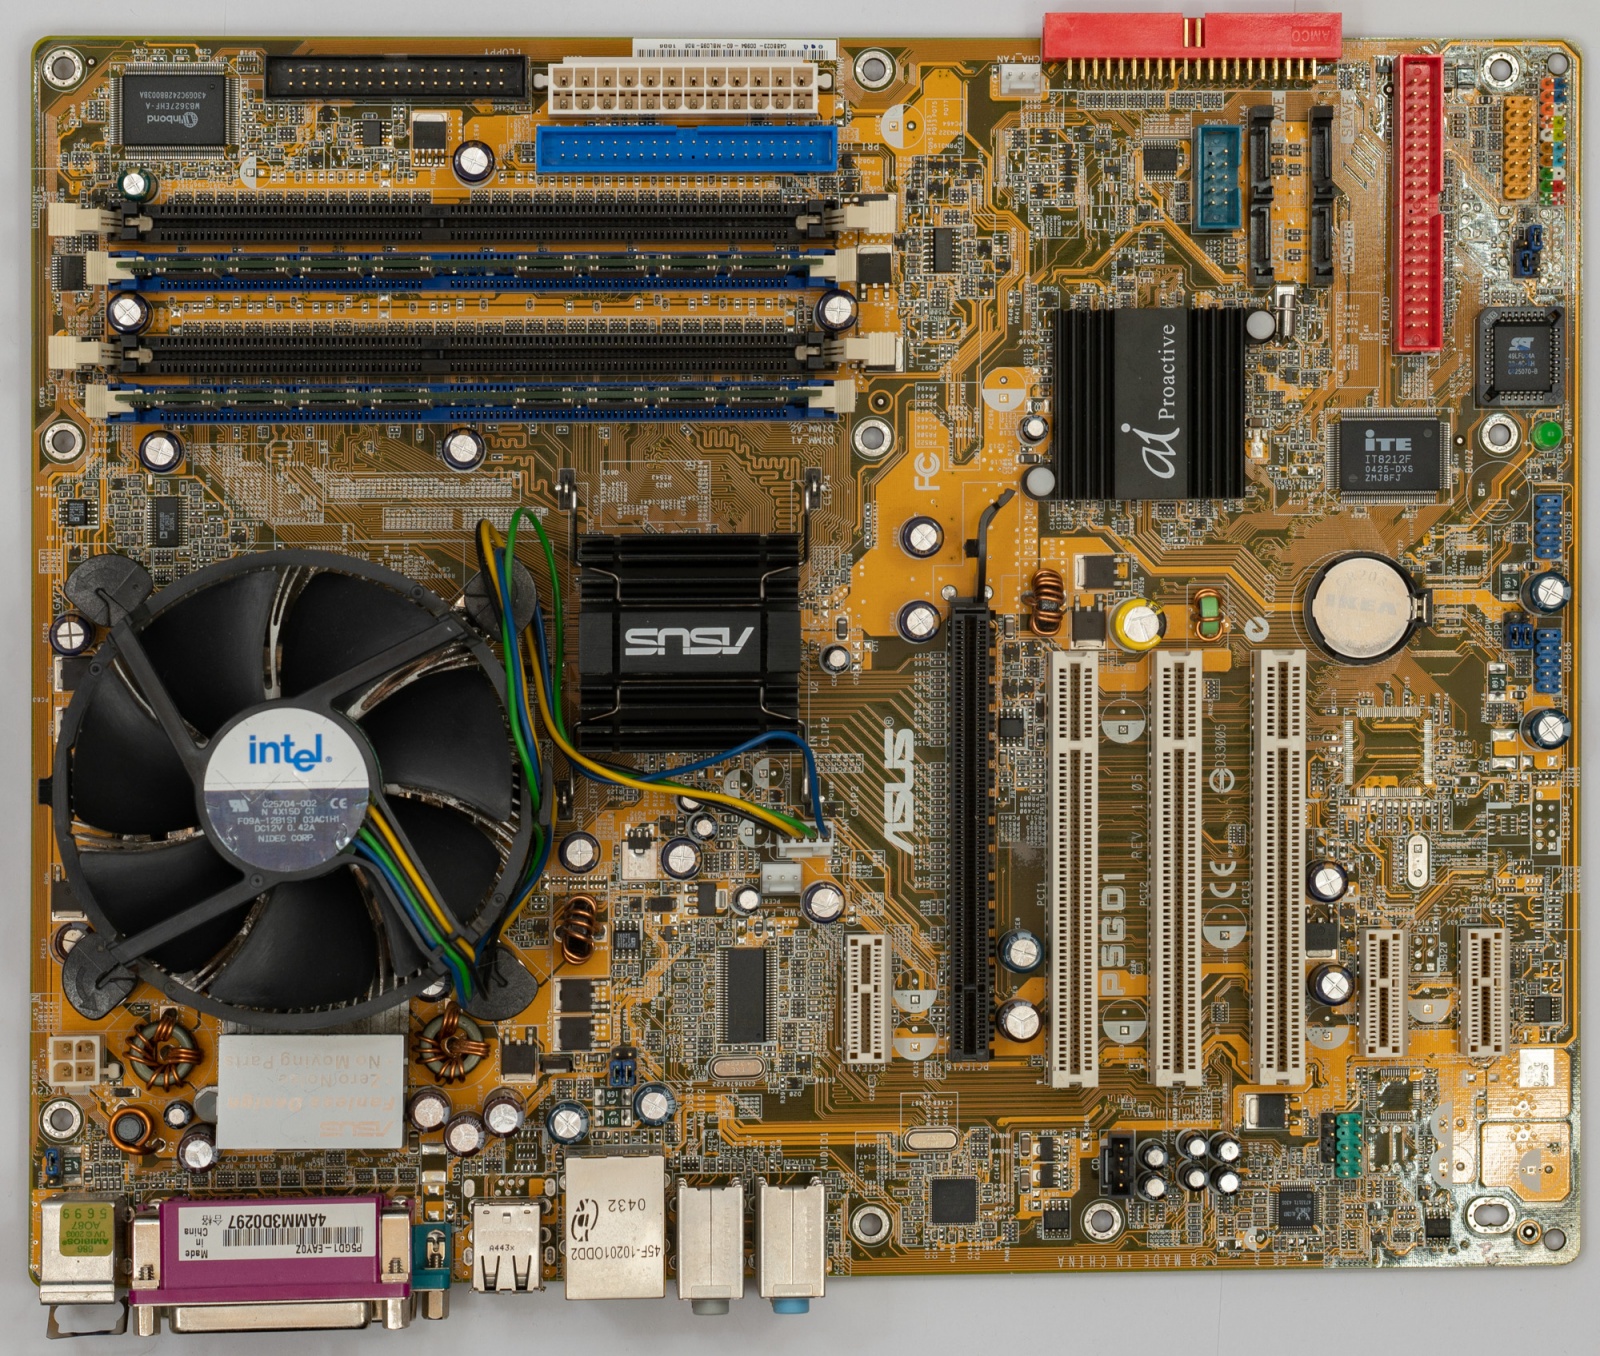 Горячий Pentium 4 и народная любовь - 9